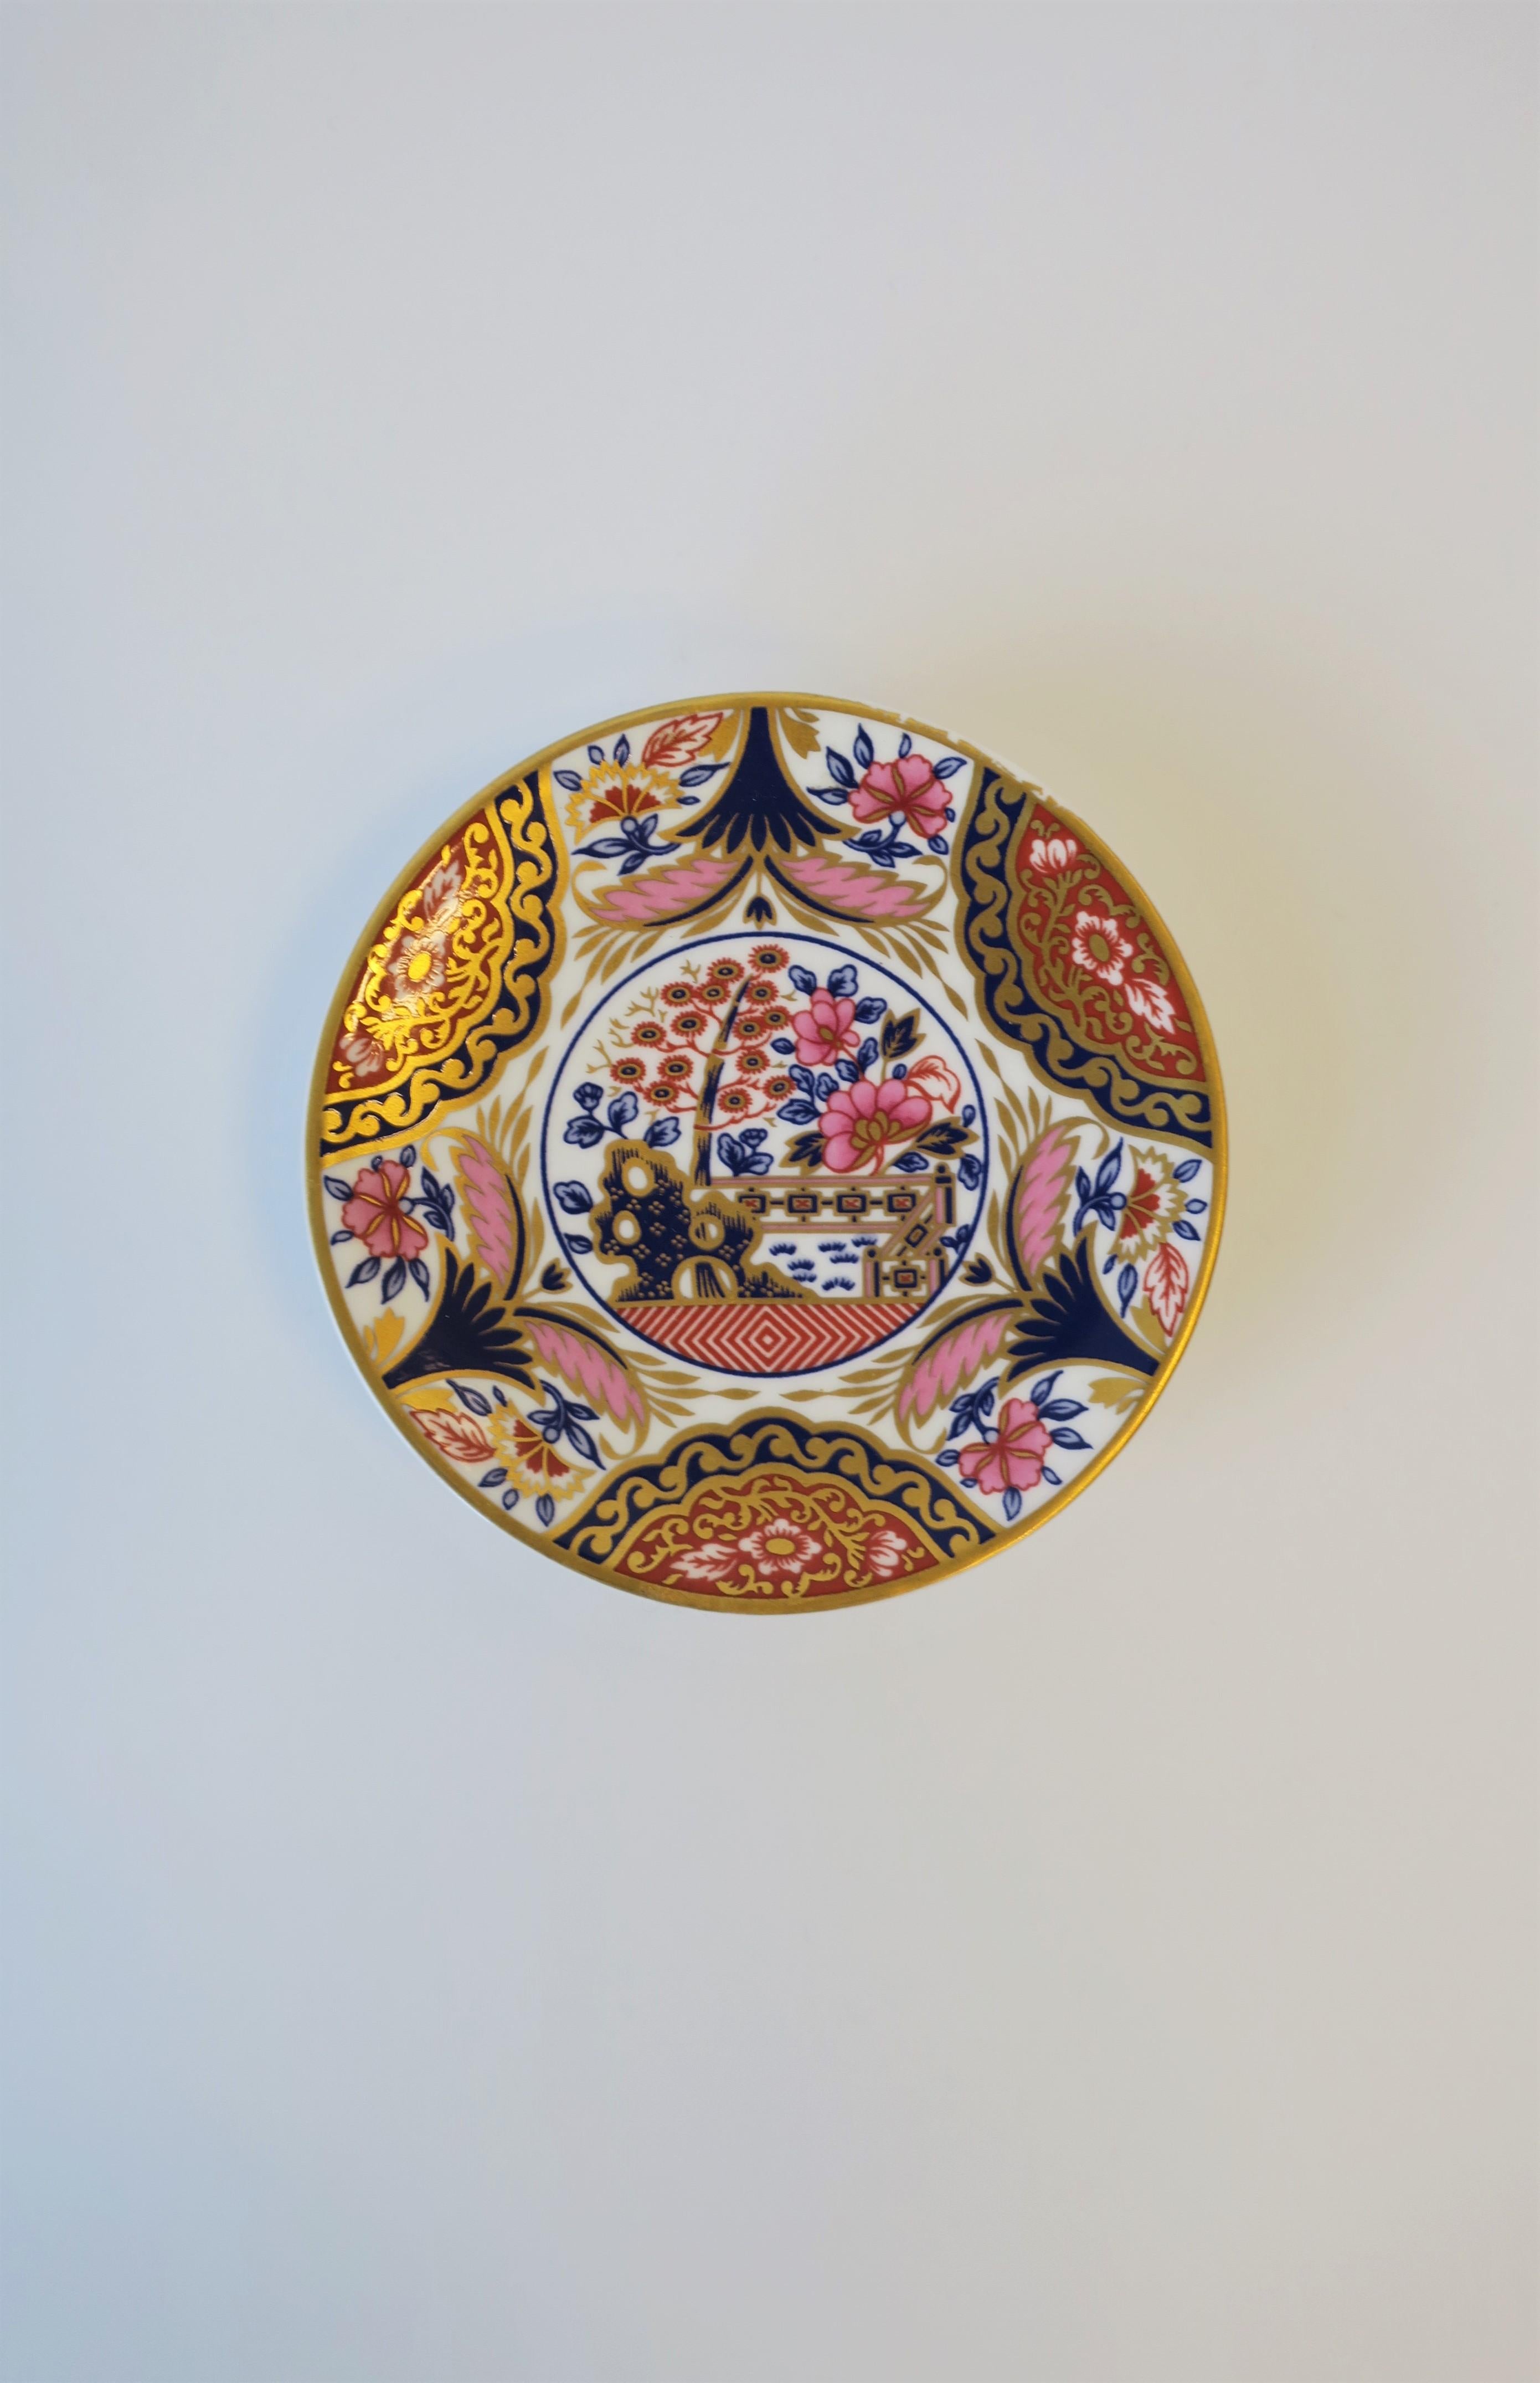 Un très beau plat à bijoux en porcelaine Spode avec un design chinoiserie, vers le 20e siècle, Angleterre. La pièce présente un beau design, y compris sa forme surélevée de type 